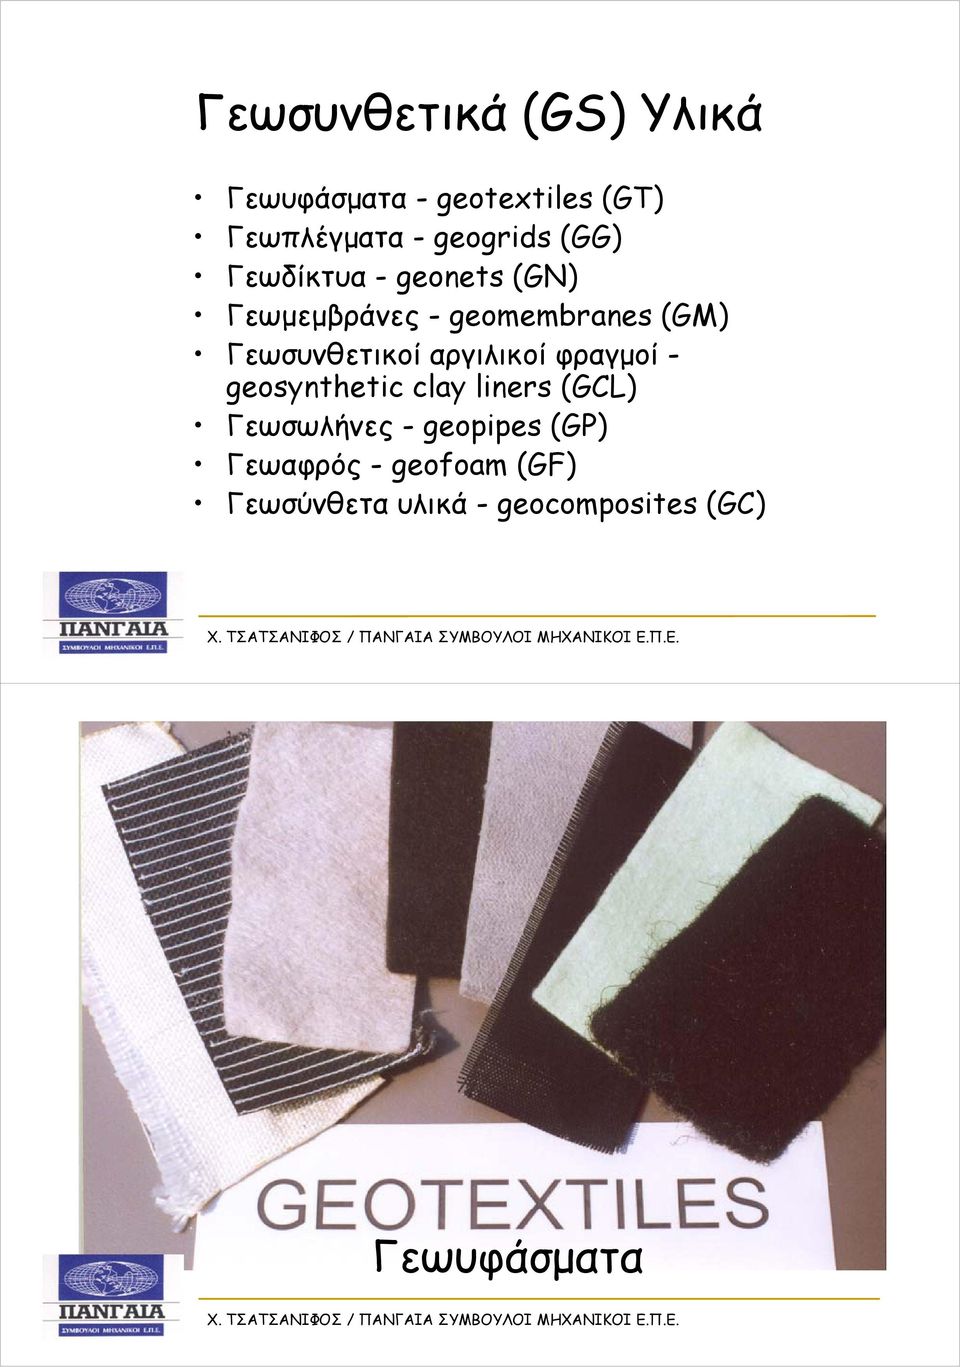 αργιλικοί φραγμοί - geosynthetic ti clay liners (GCL) Γεωσωλήνες - geopipes